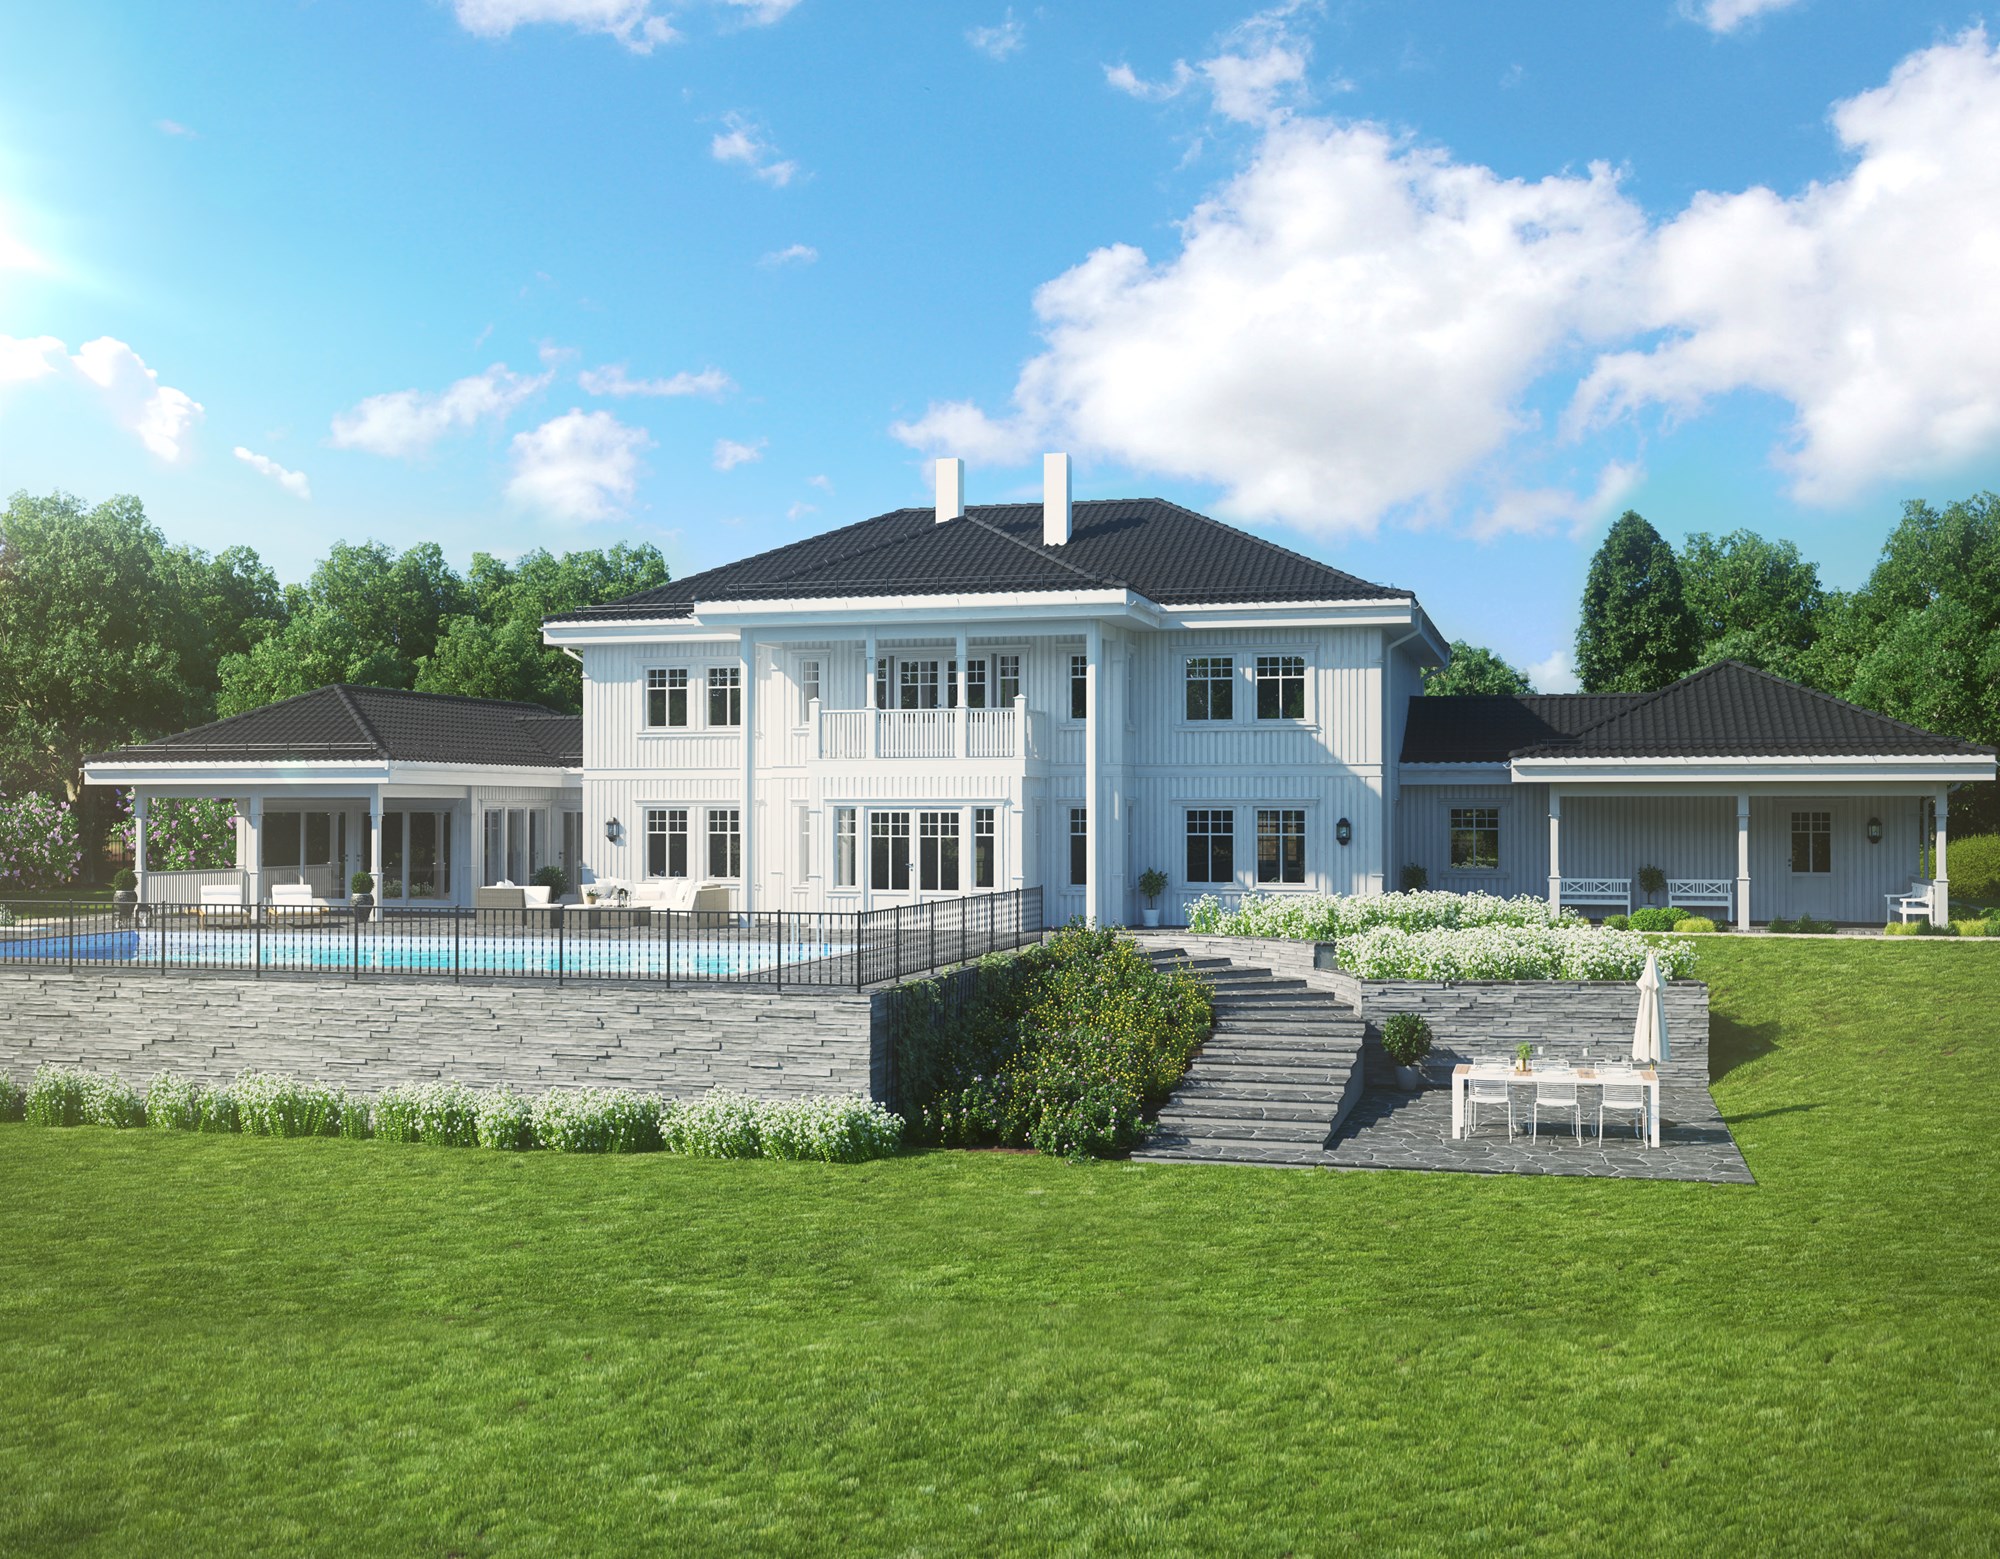 Valg av byggefirma - Ladegaard-1.jpg - Drømmebolig2017